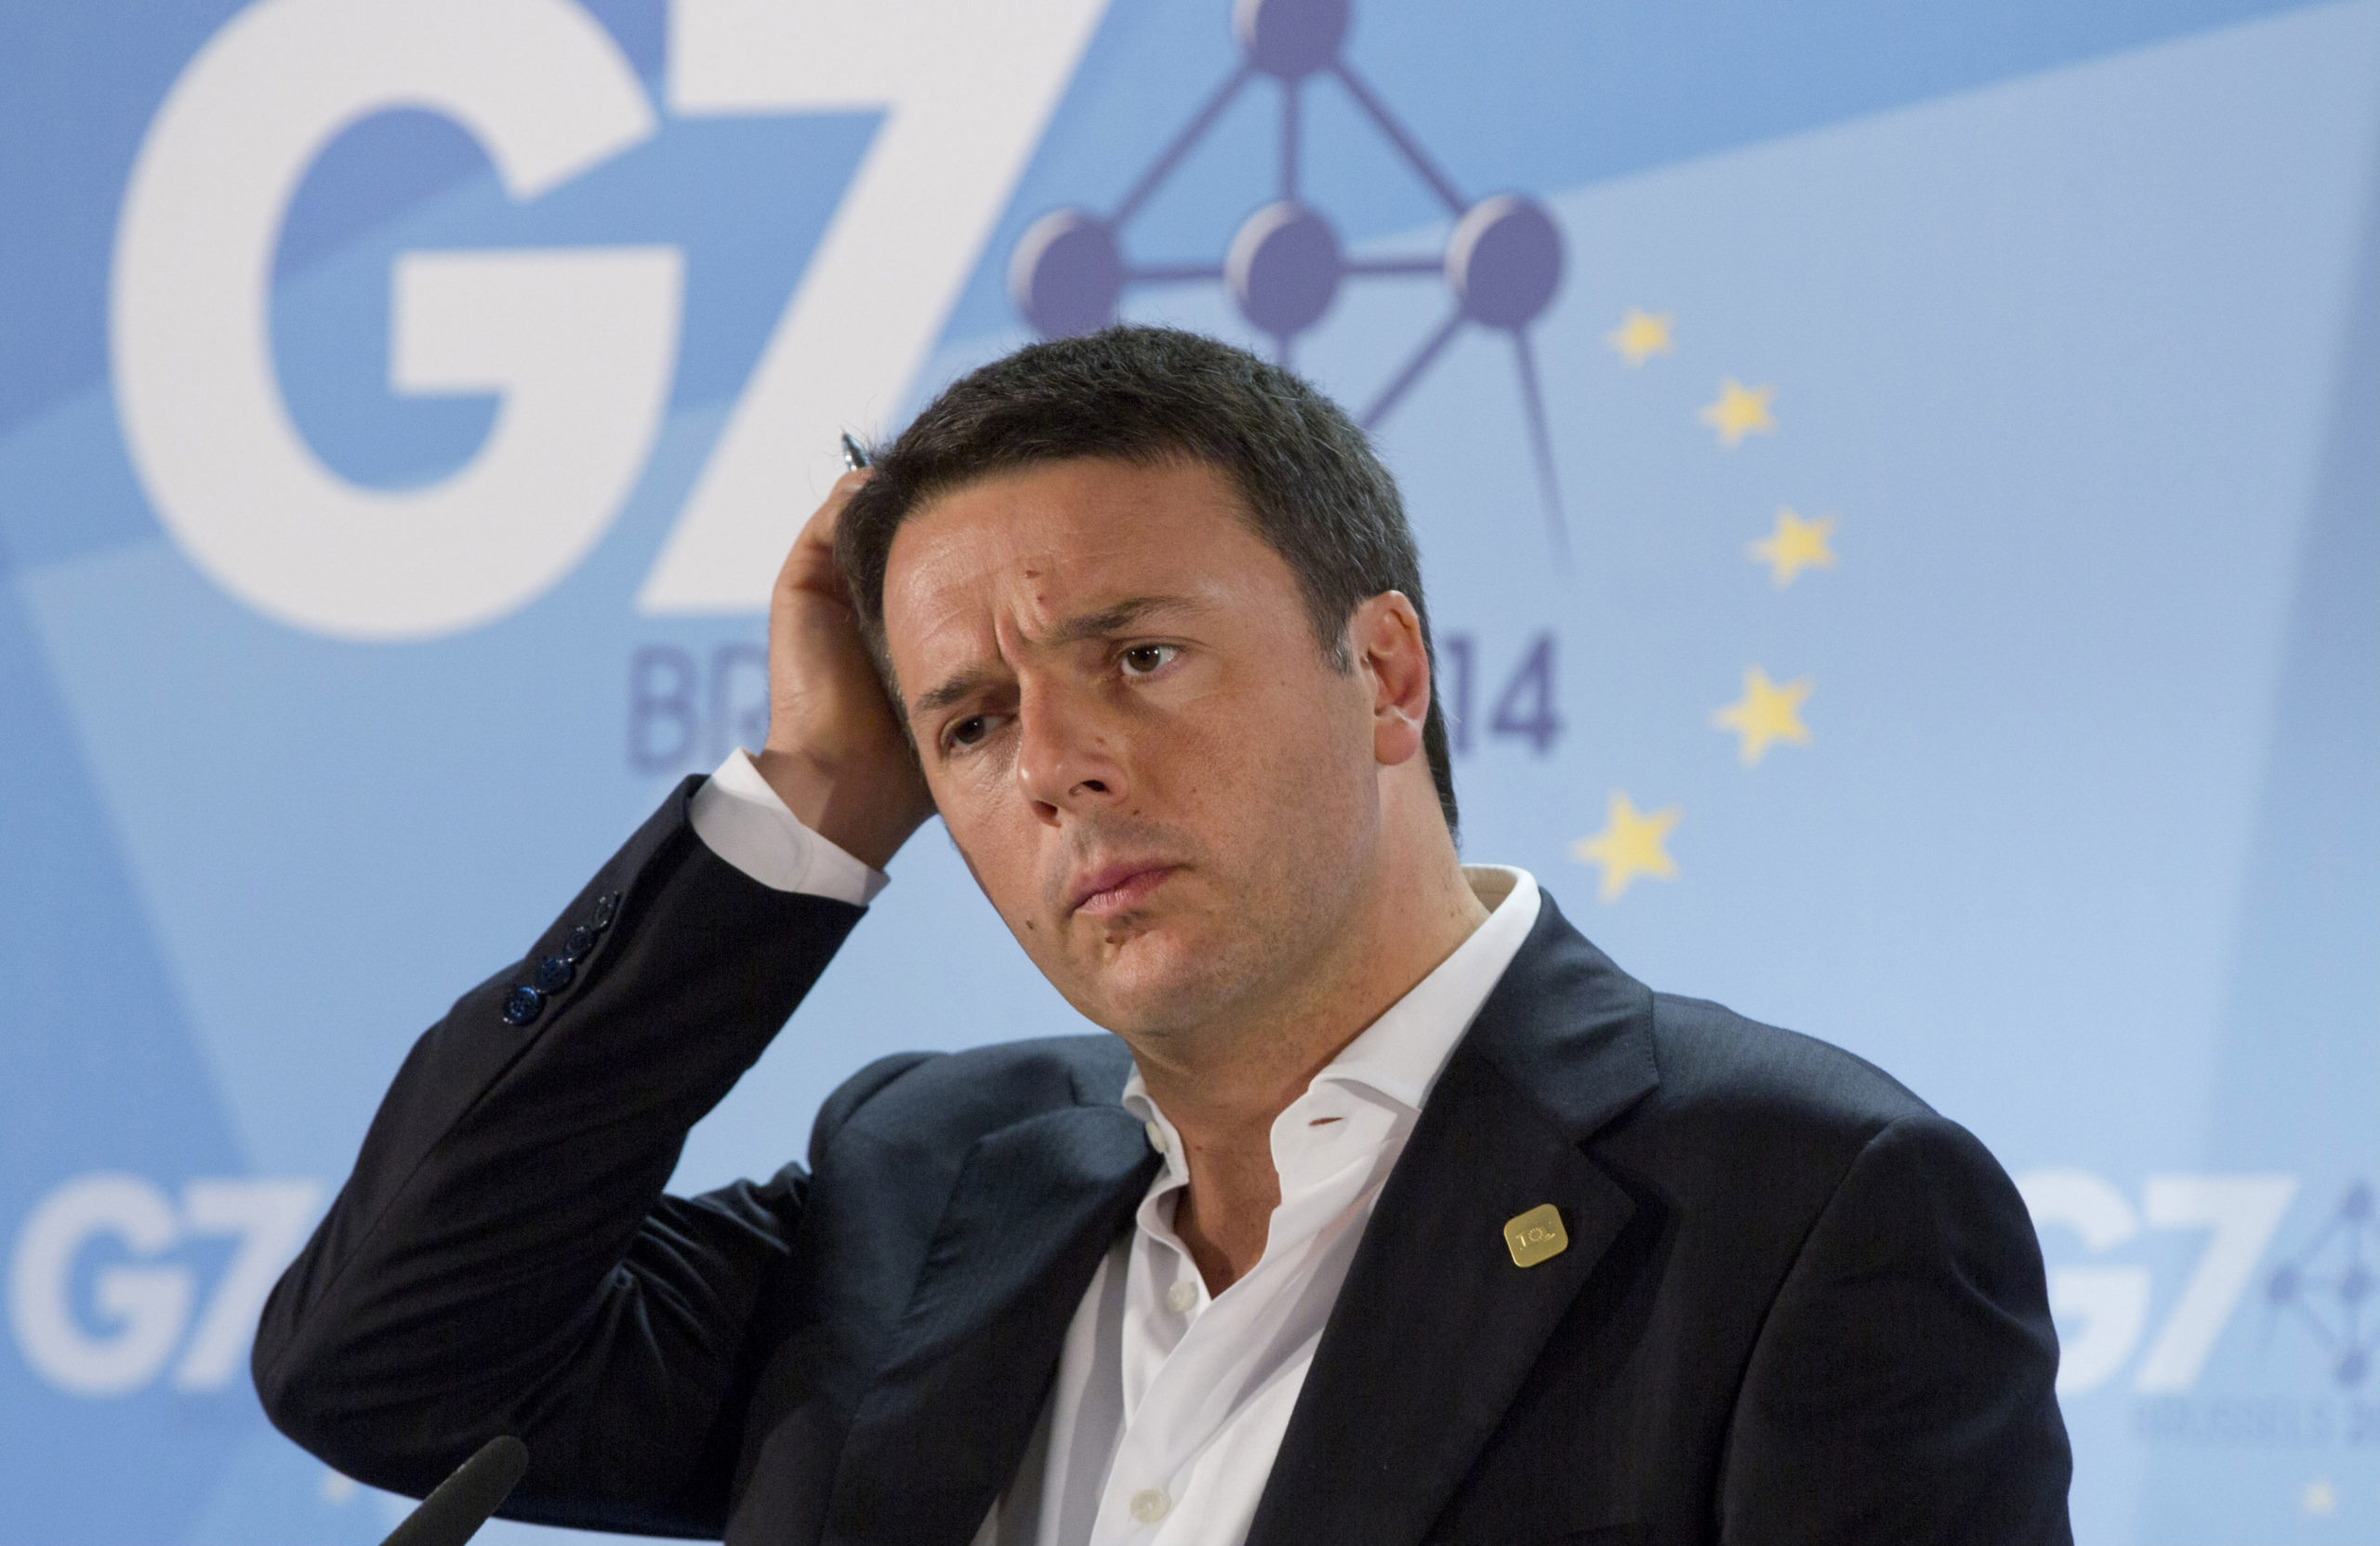 Ιταλία – Εκλογές: Νίκη των Πέντε Αστέρων σε Ρώμη και Τορίνο – Ανησυχητικό μήνυμα σε Ρέντσι